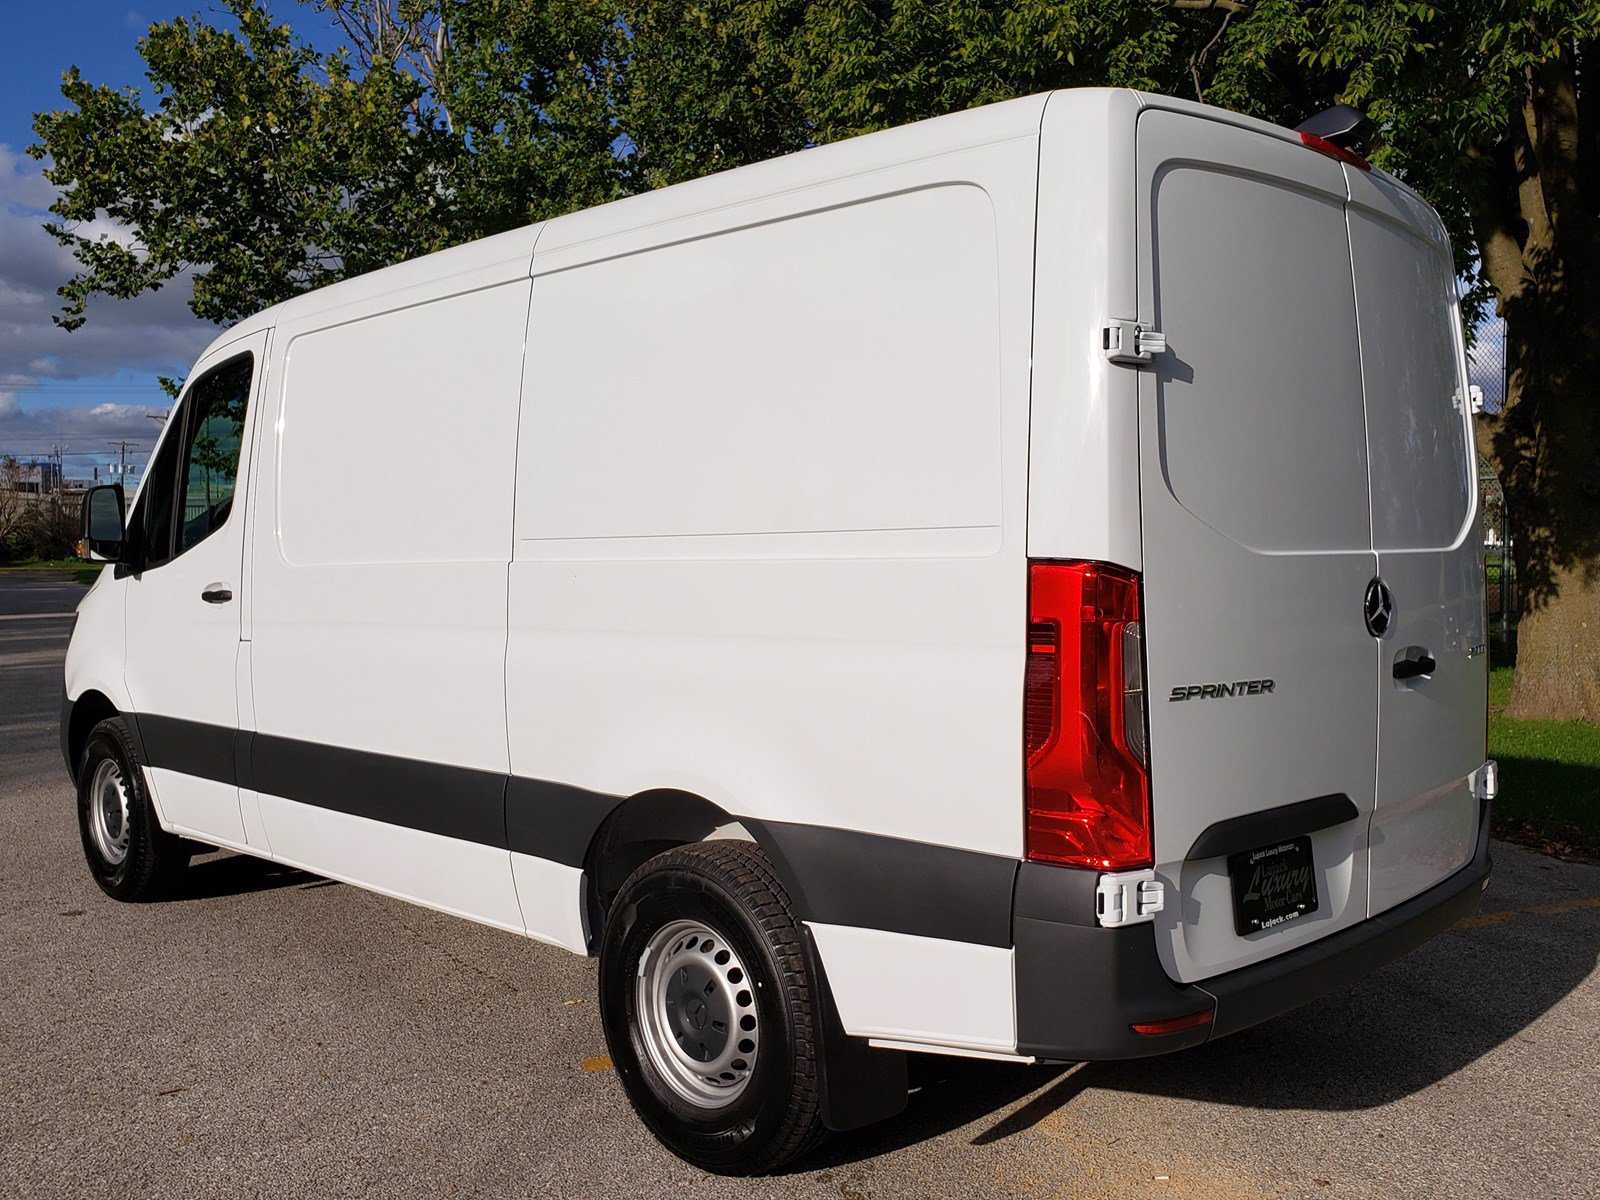 New 2019 Mercedes Benz Sprinter Cargo Van Cargo 144 Wb Rwd Full Size Cargo Van